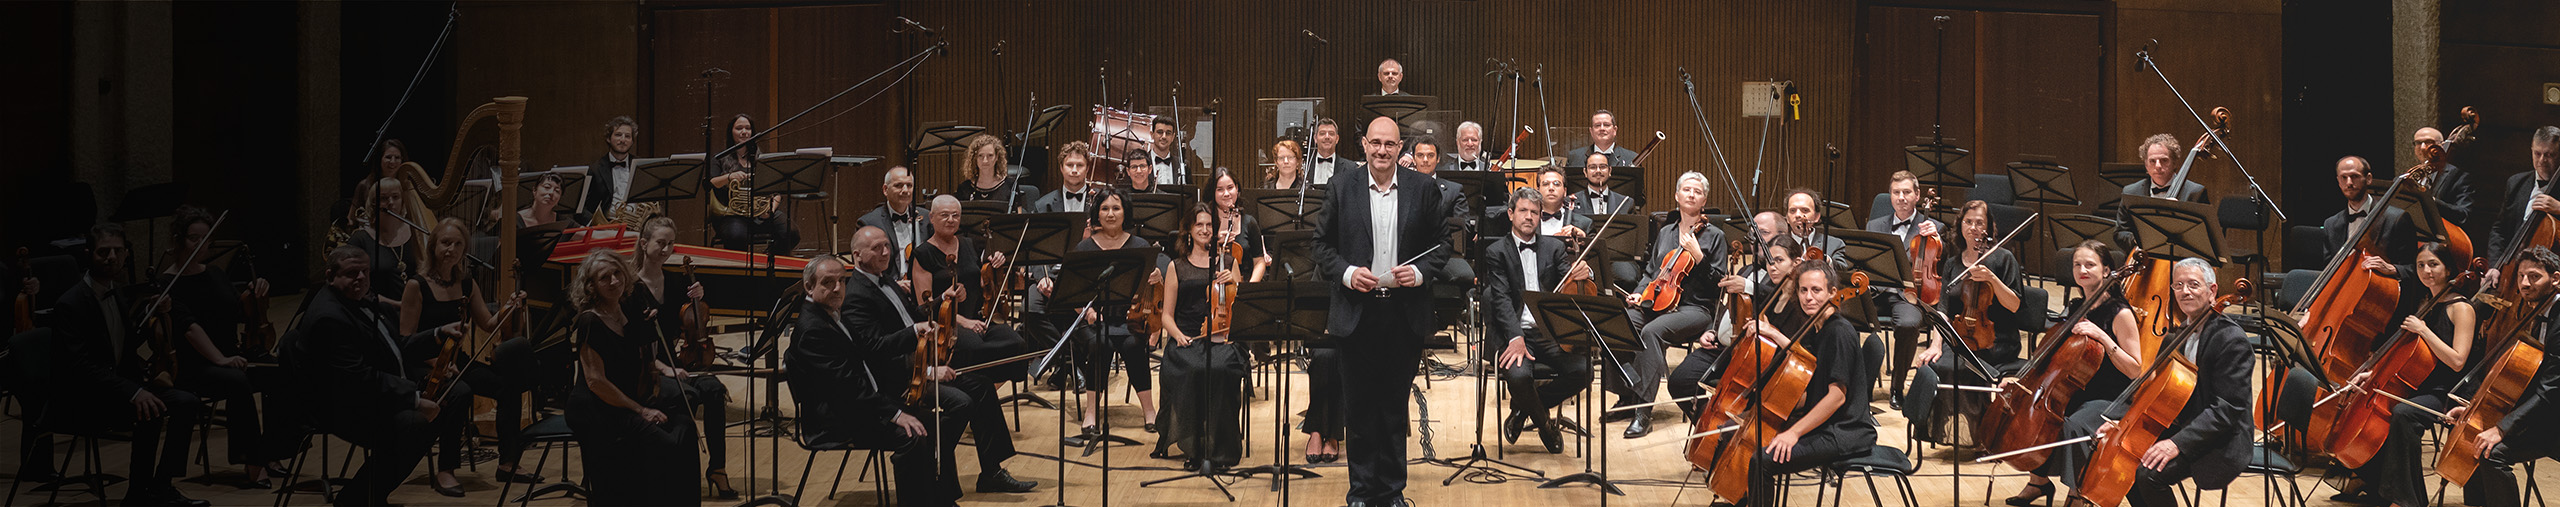 Jerusalem Symphony Orchestra profile cover